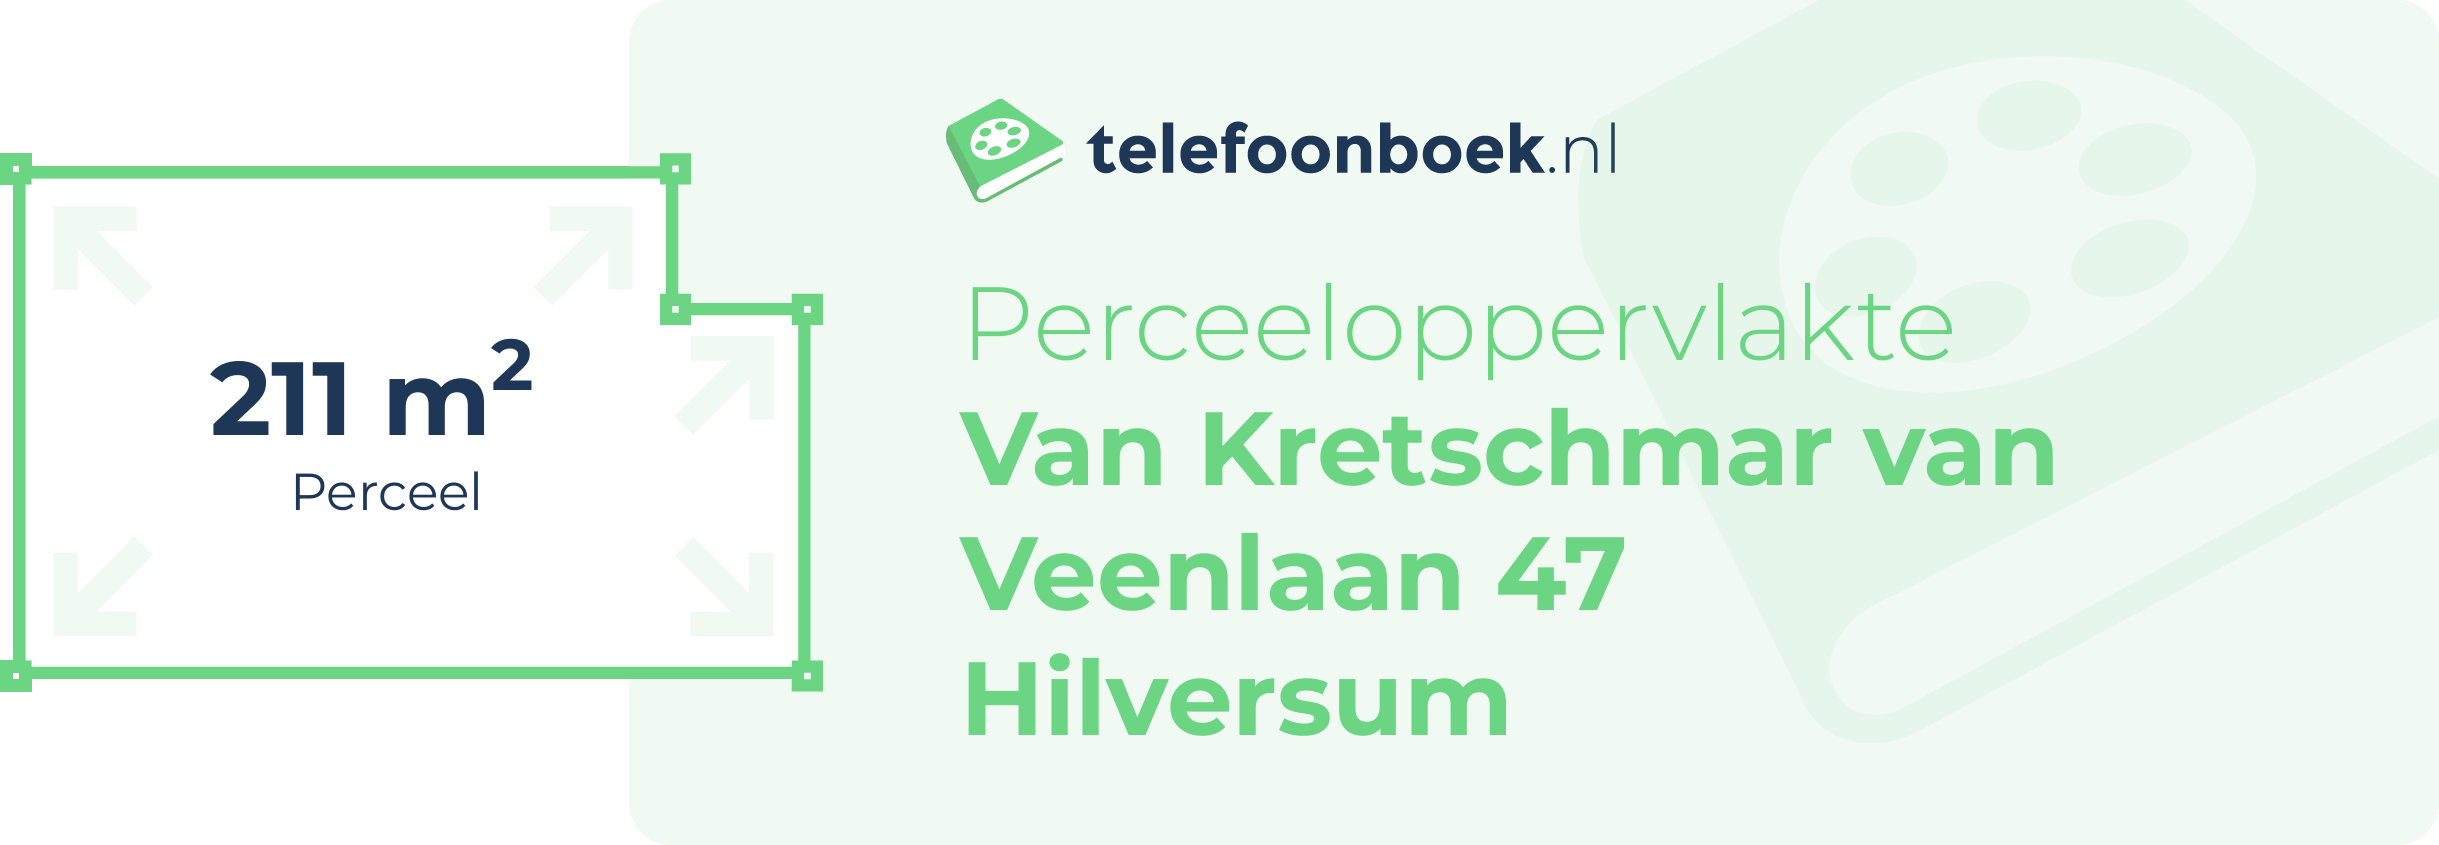 Perceeloppervlakte Van Kretschmar Van Veenlaan 47 Hilversum